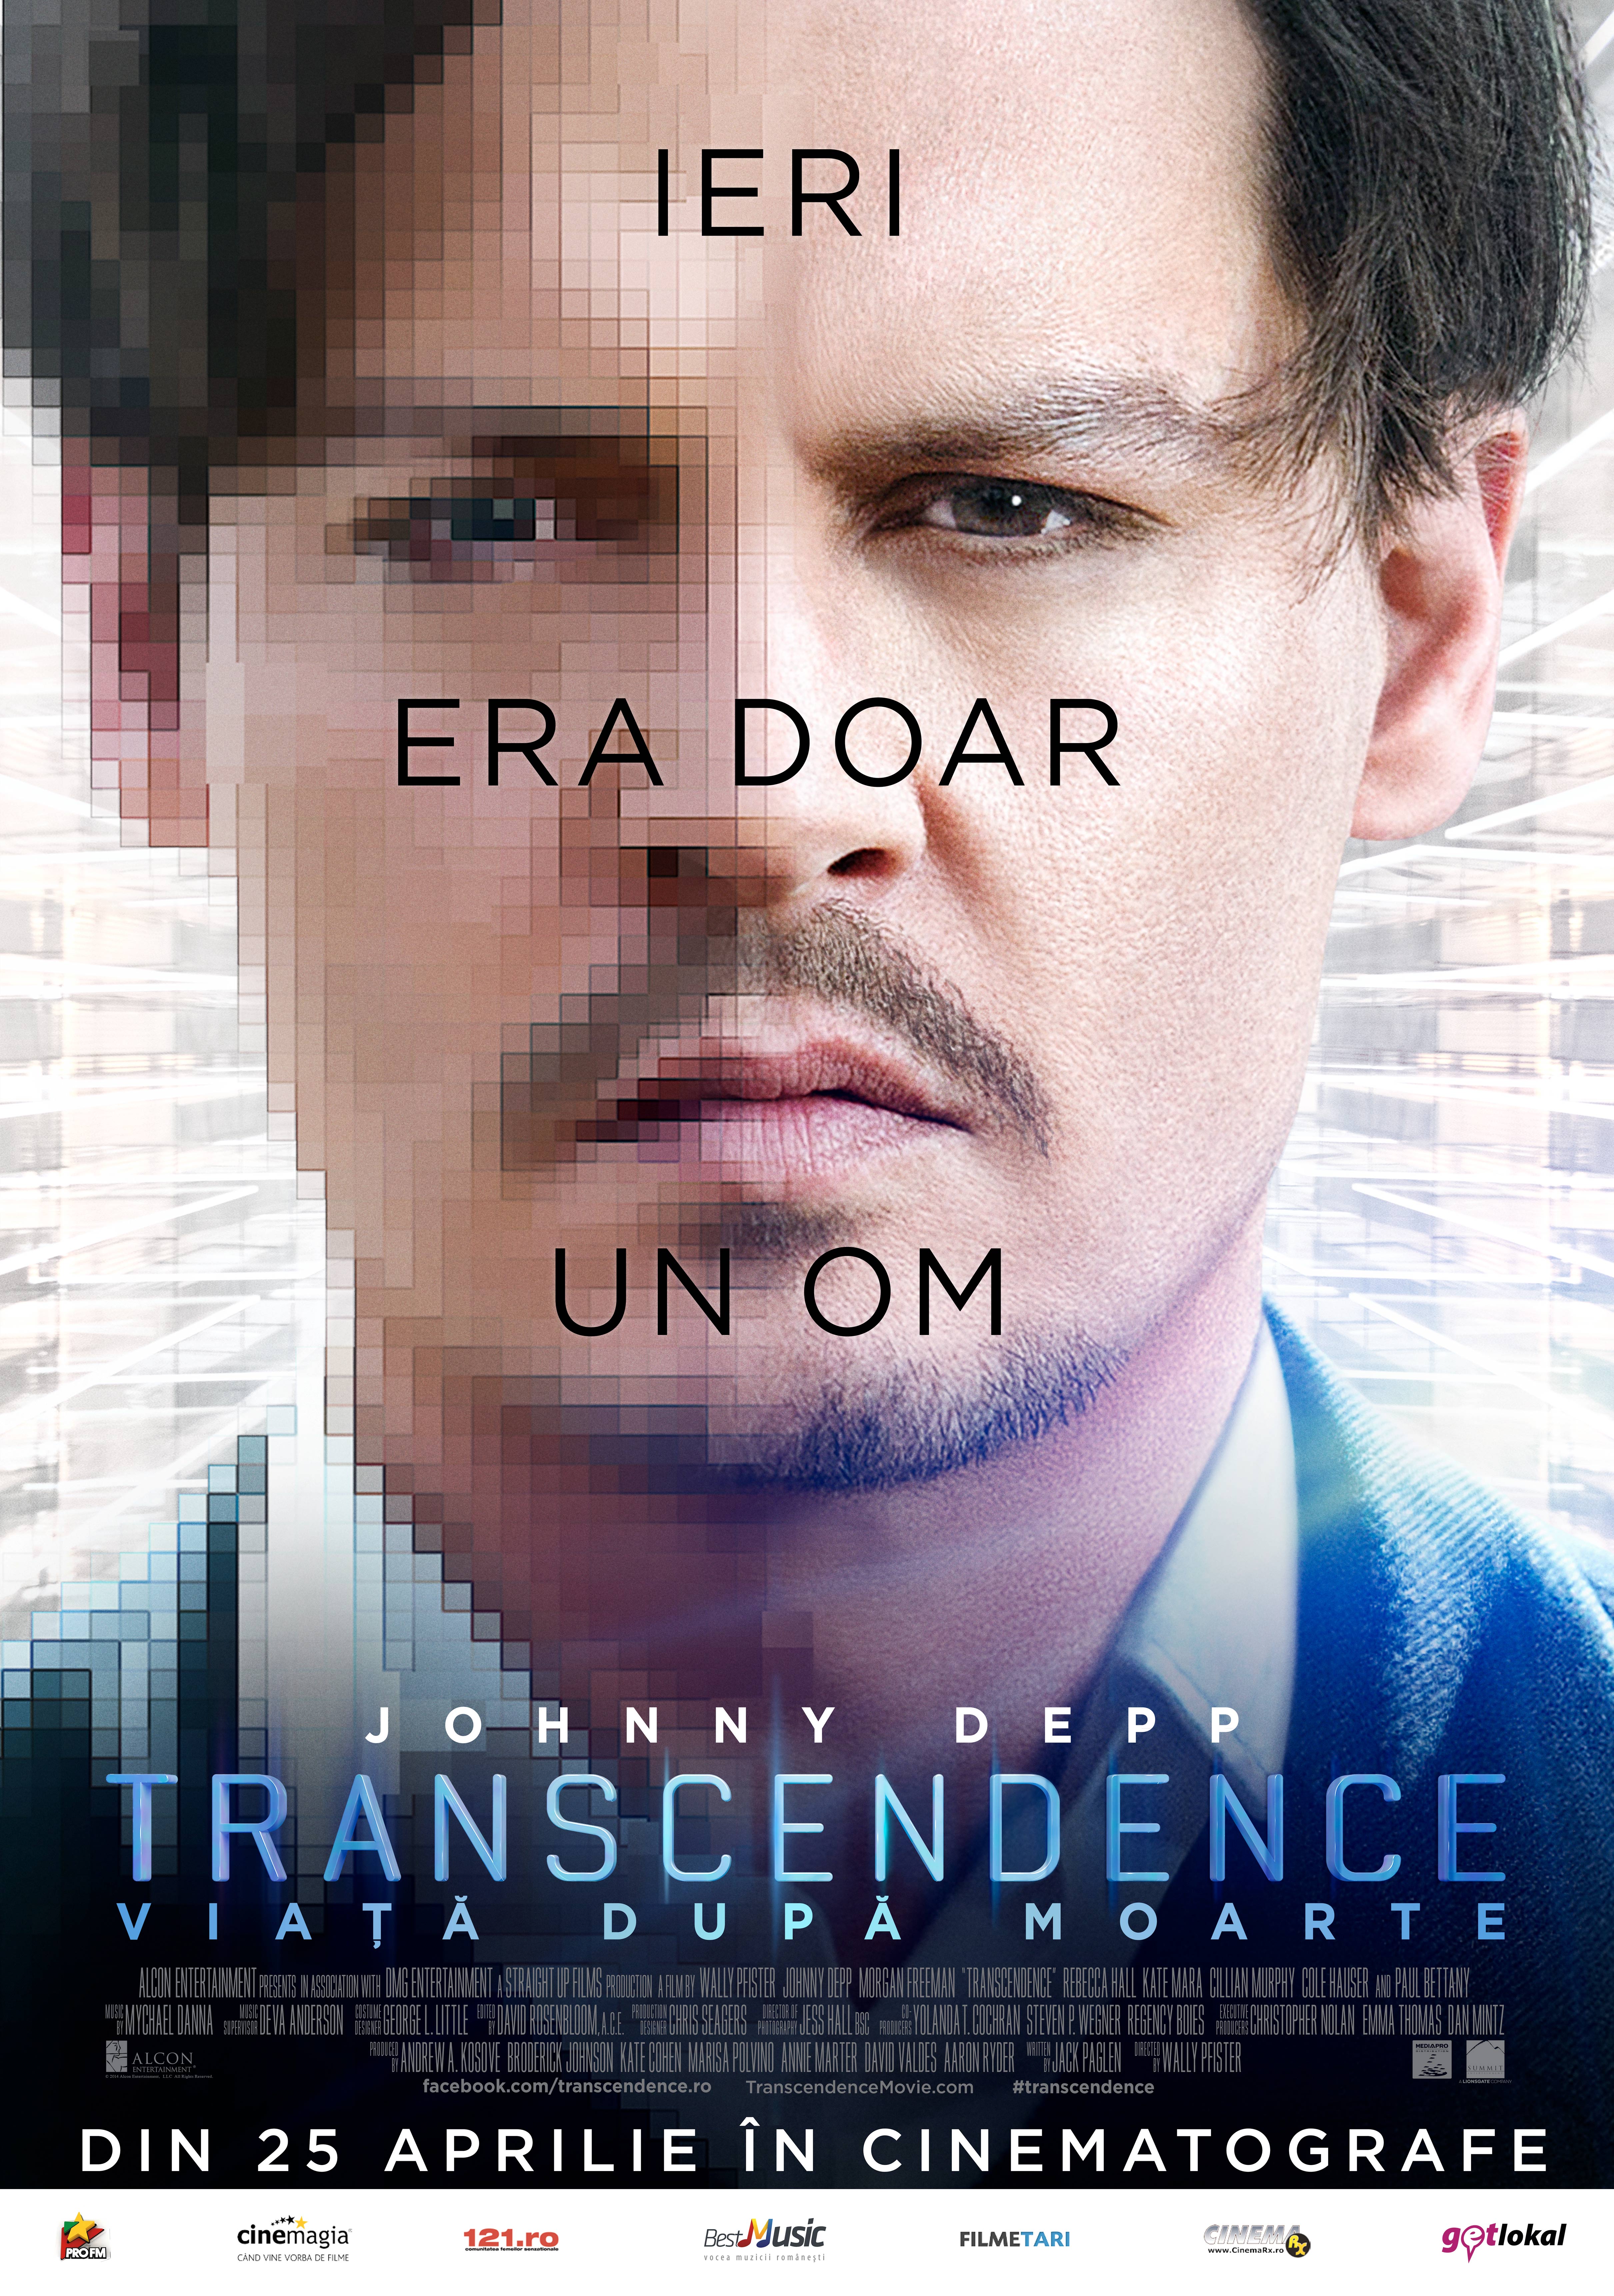 ekstra privat gået vanvittigt Transcendence - Transcendence: Viață după moarte (2014) - Film -  CineMagia.ro